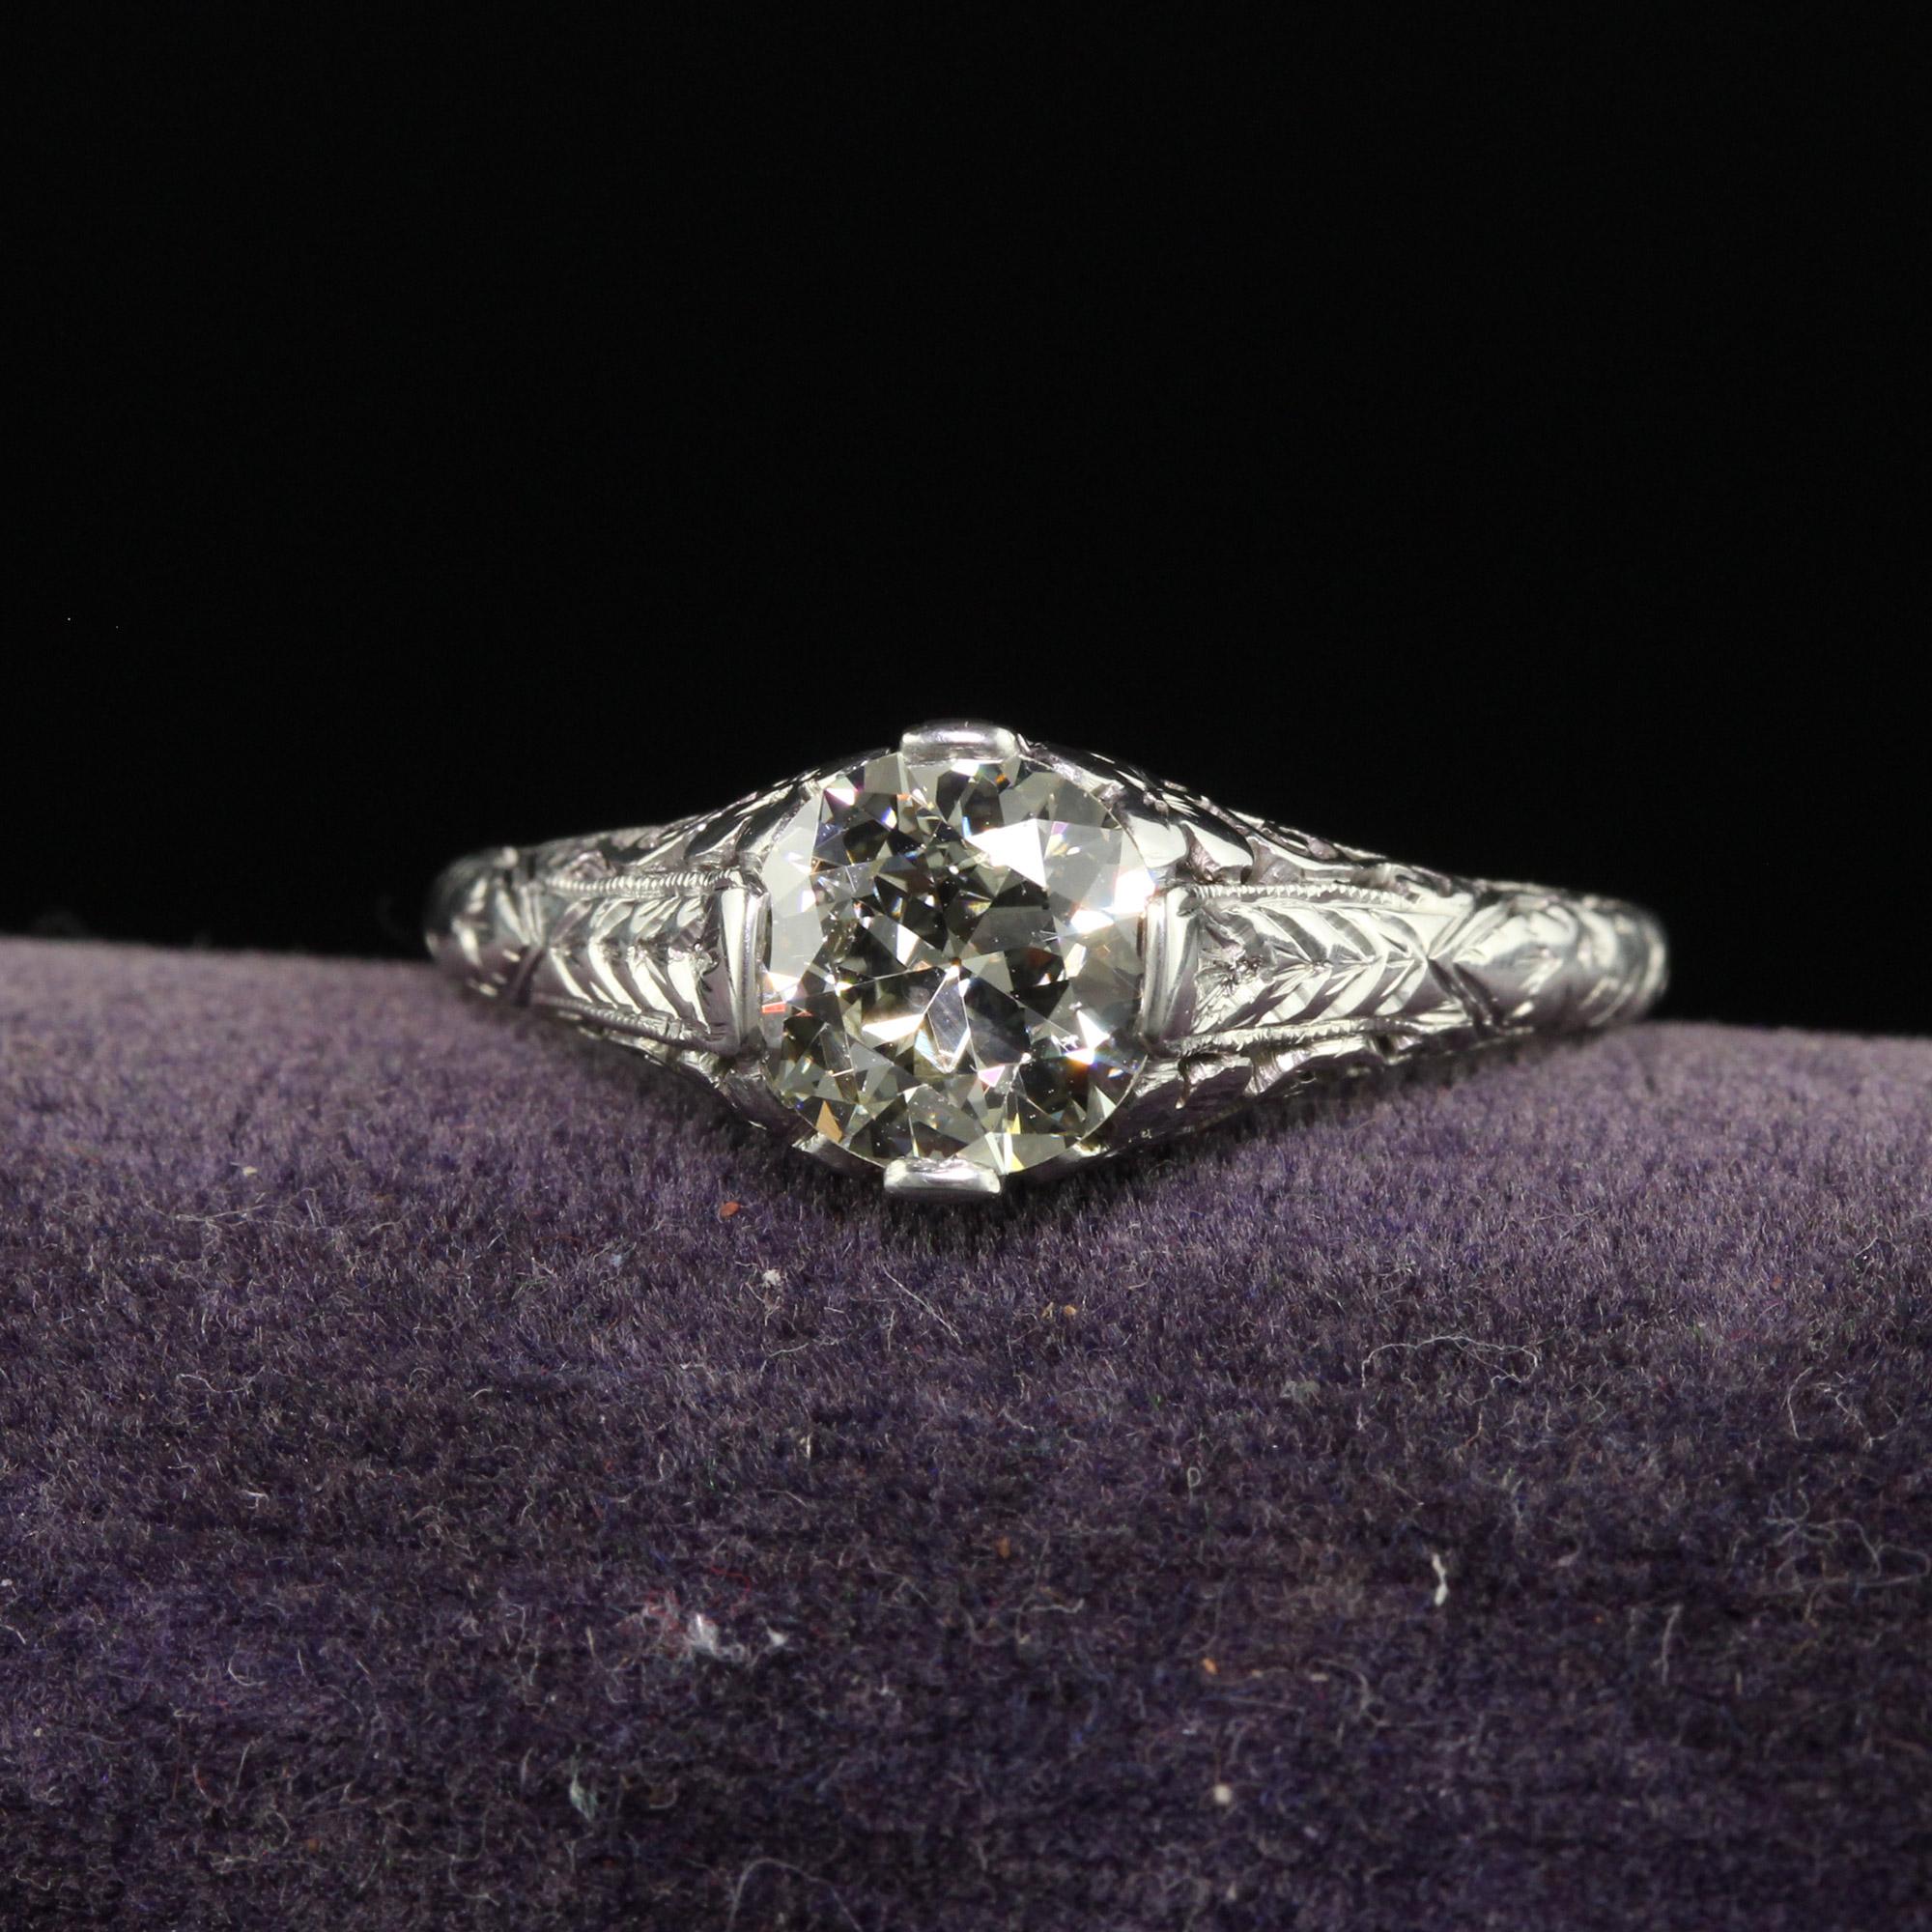 Schöner antiker Art Deco Platin Verlobungsring mit europäischem Diamantschliff - GIA. Dieser wunderschöne Verlobungsring mit altem europäischem Schliff ist aus Platin gefertigt. In der Mitte befindet sich ein schöner Diamant mit altem Schliff, der